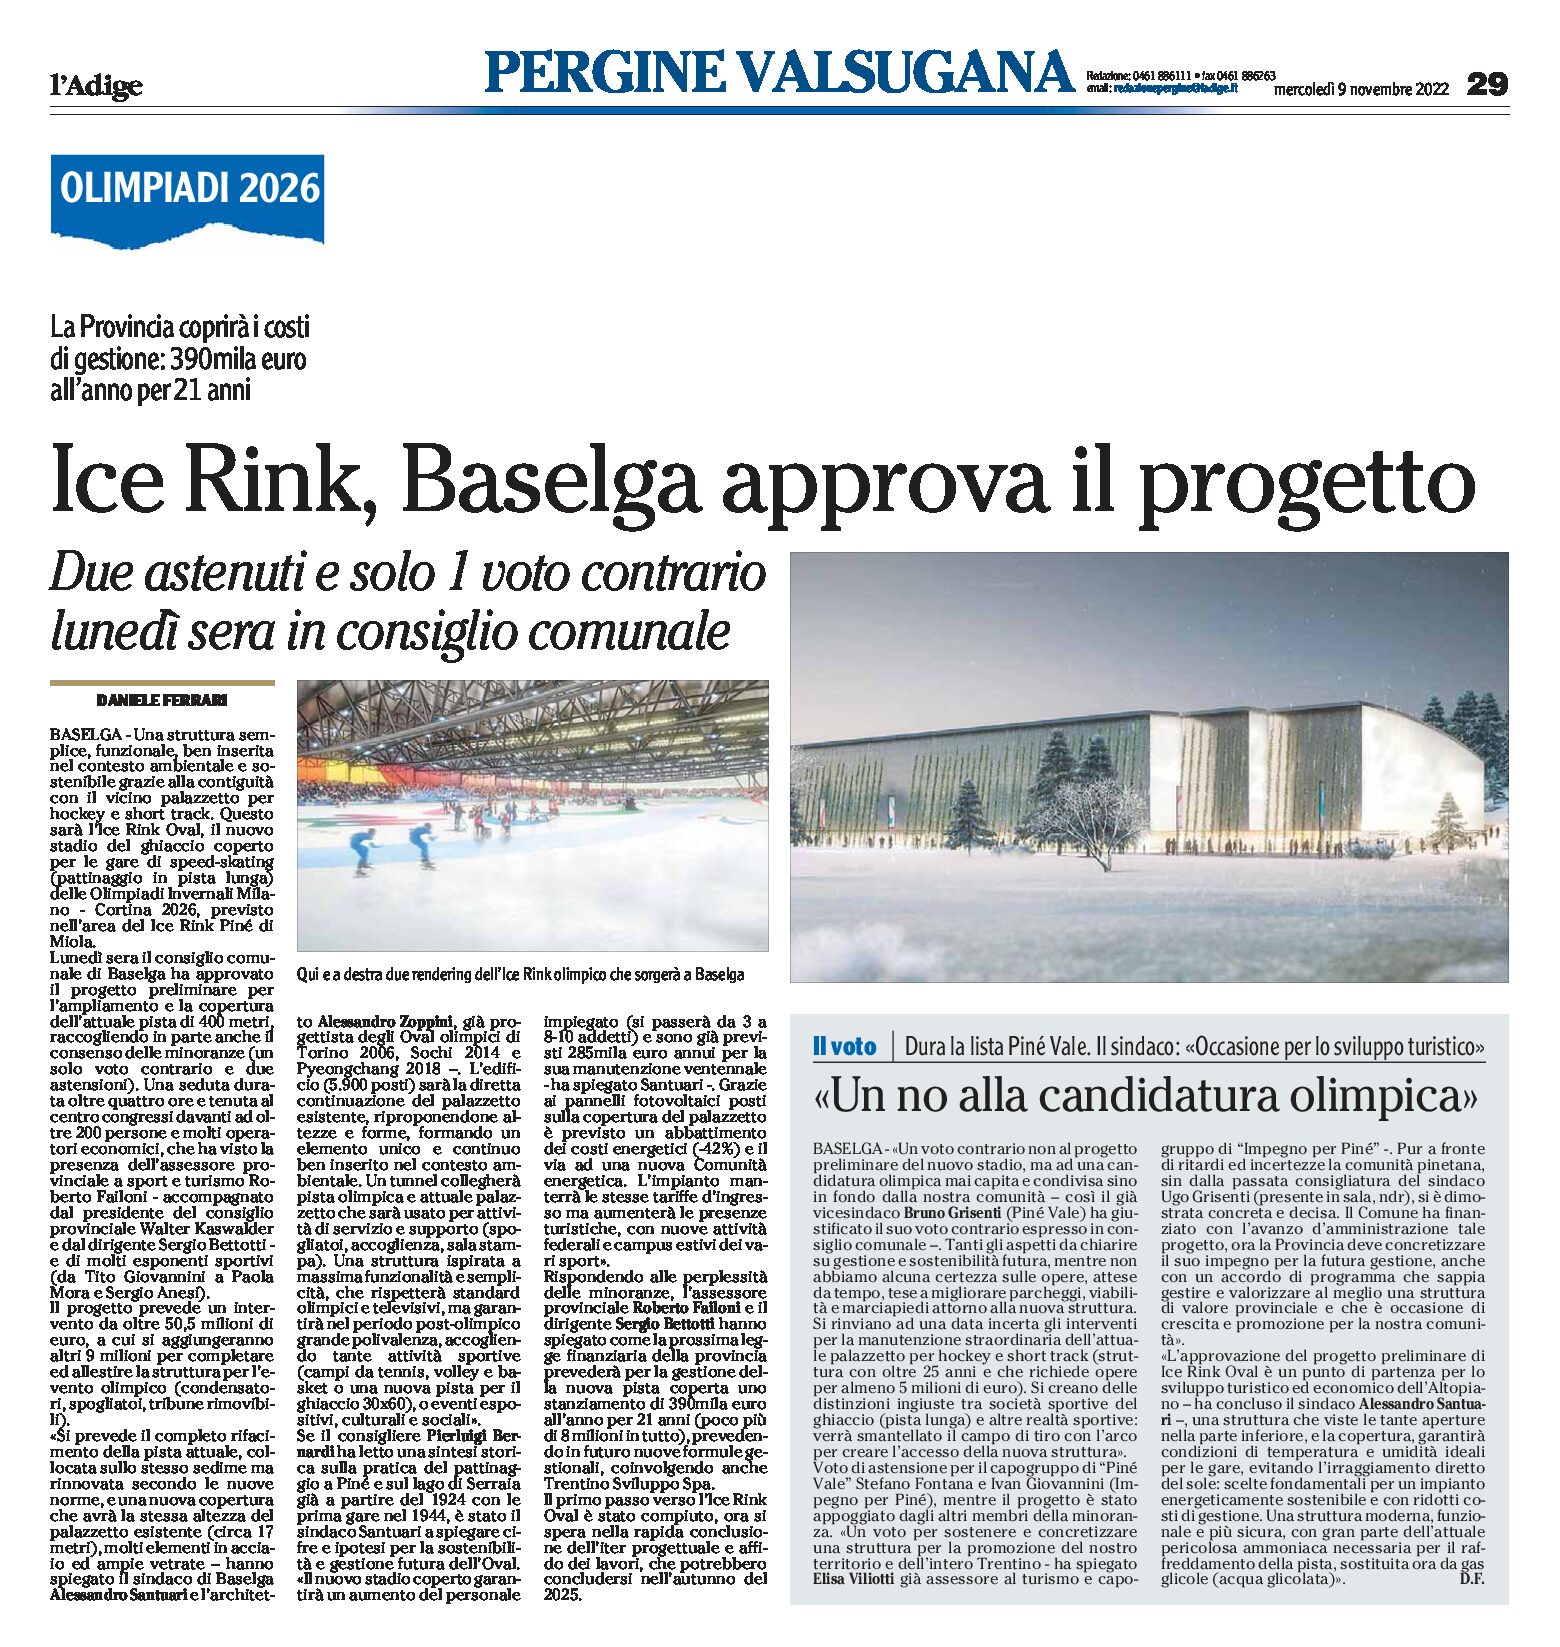 Ice Rink: Baselga approva il progetto